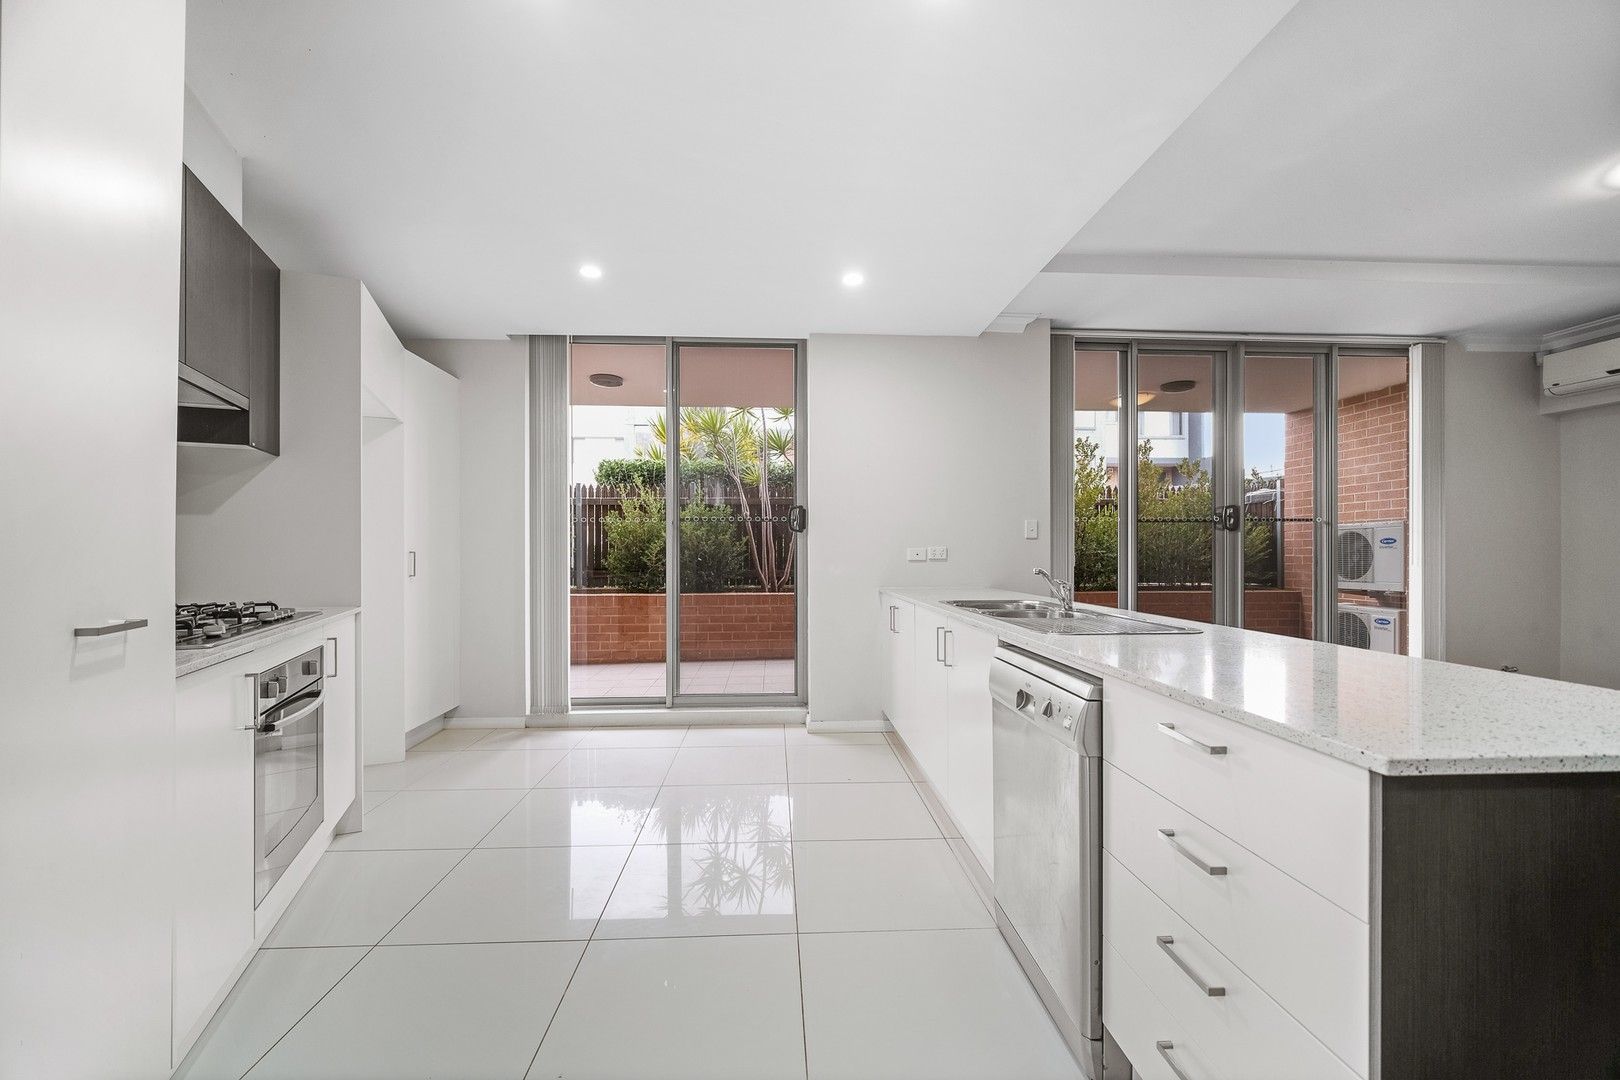 2 bedrooms Apartment / Unit / Flat in 23/34-36 Herbert Street WEST RYDE NSW, 2114